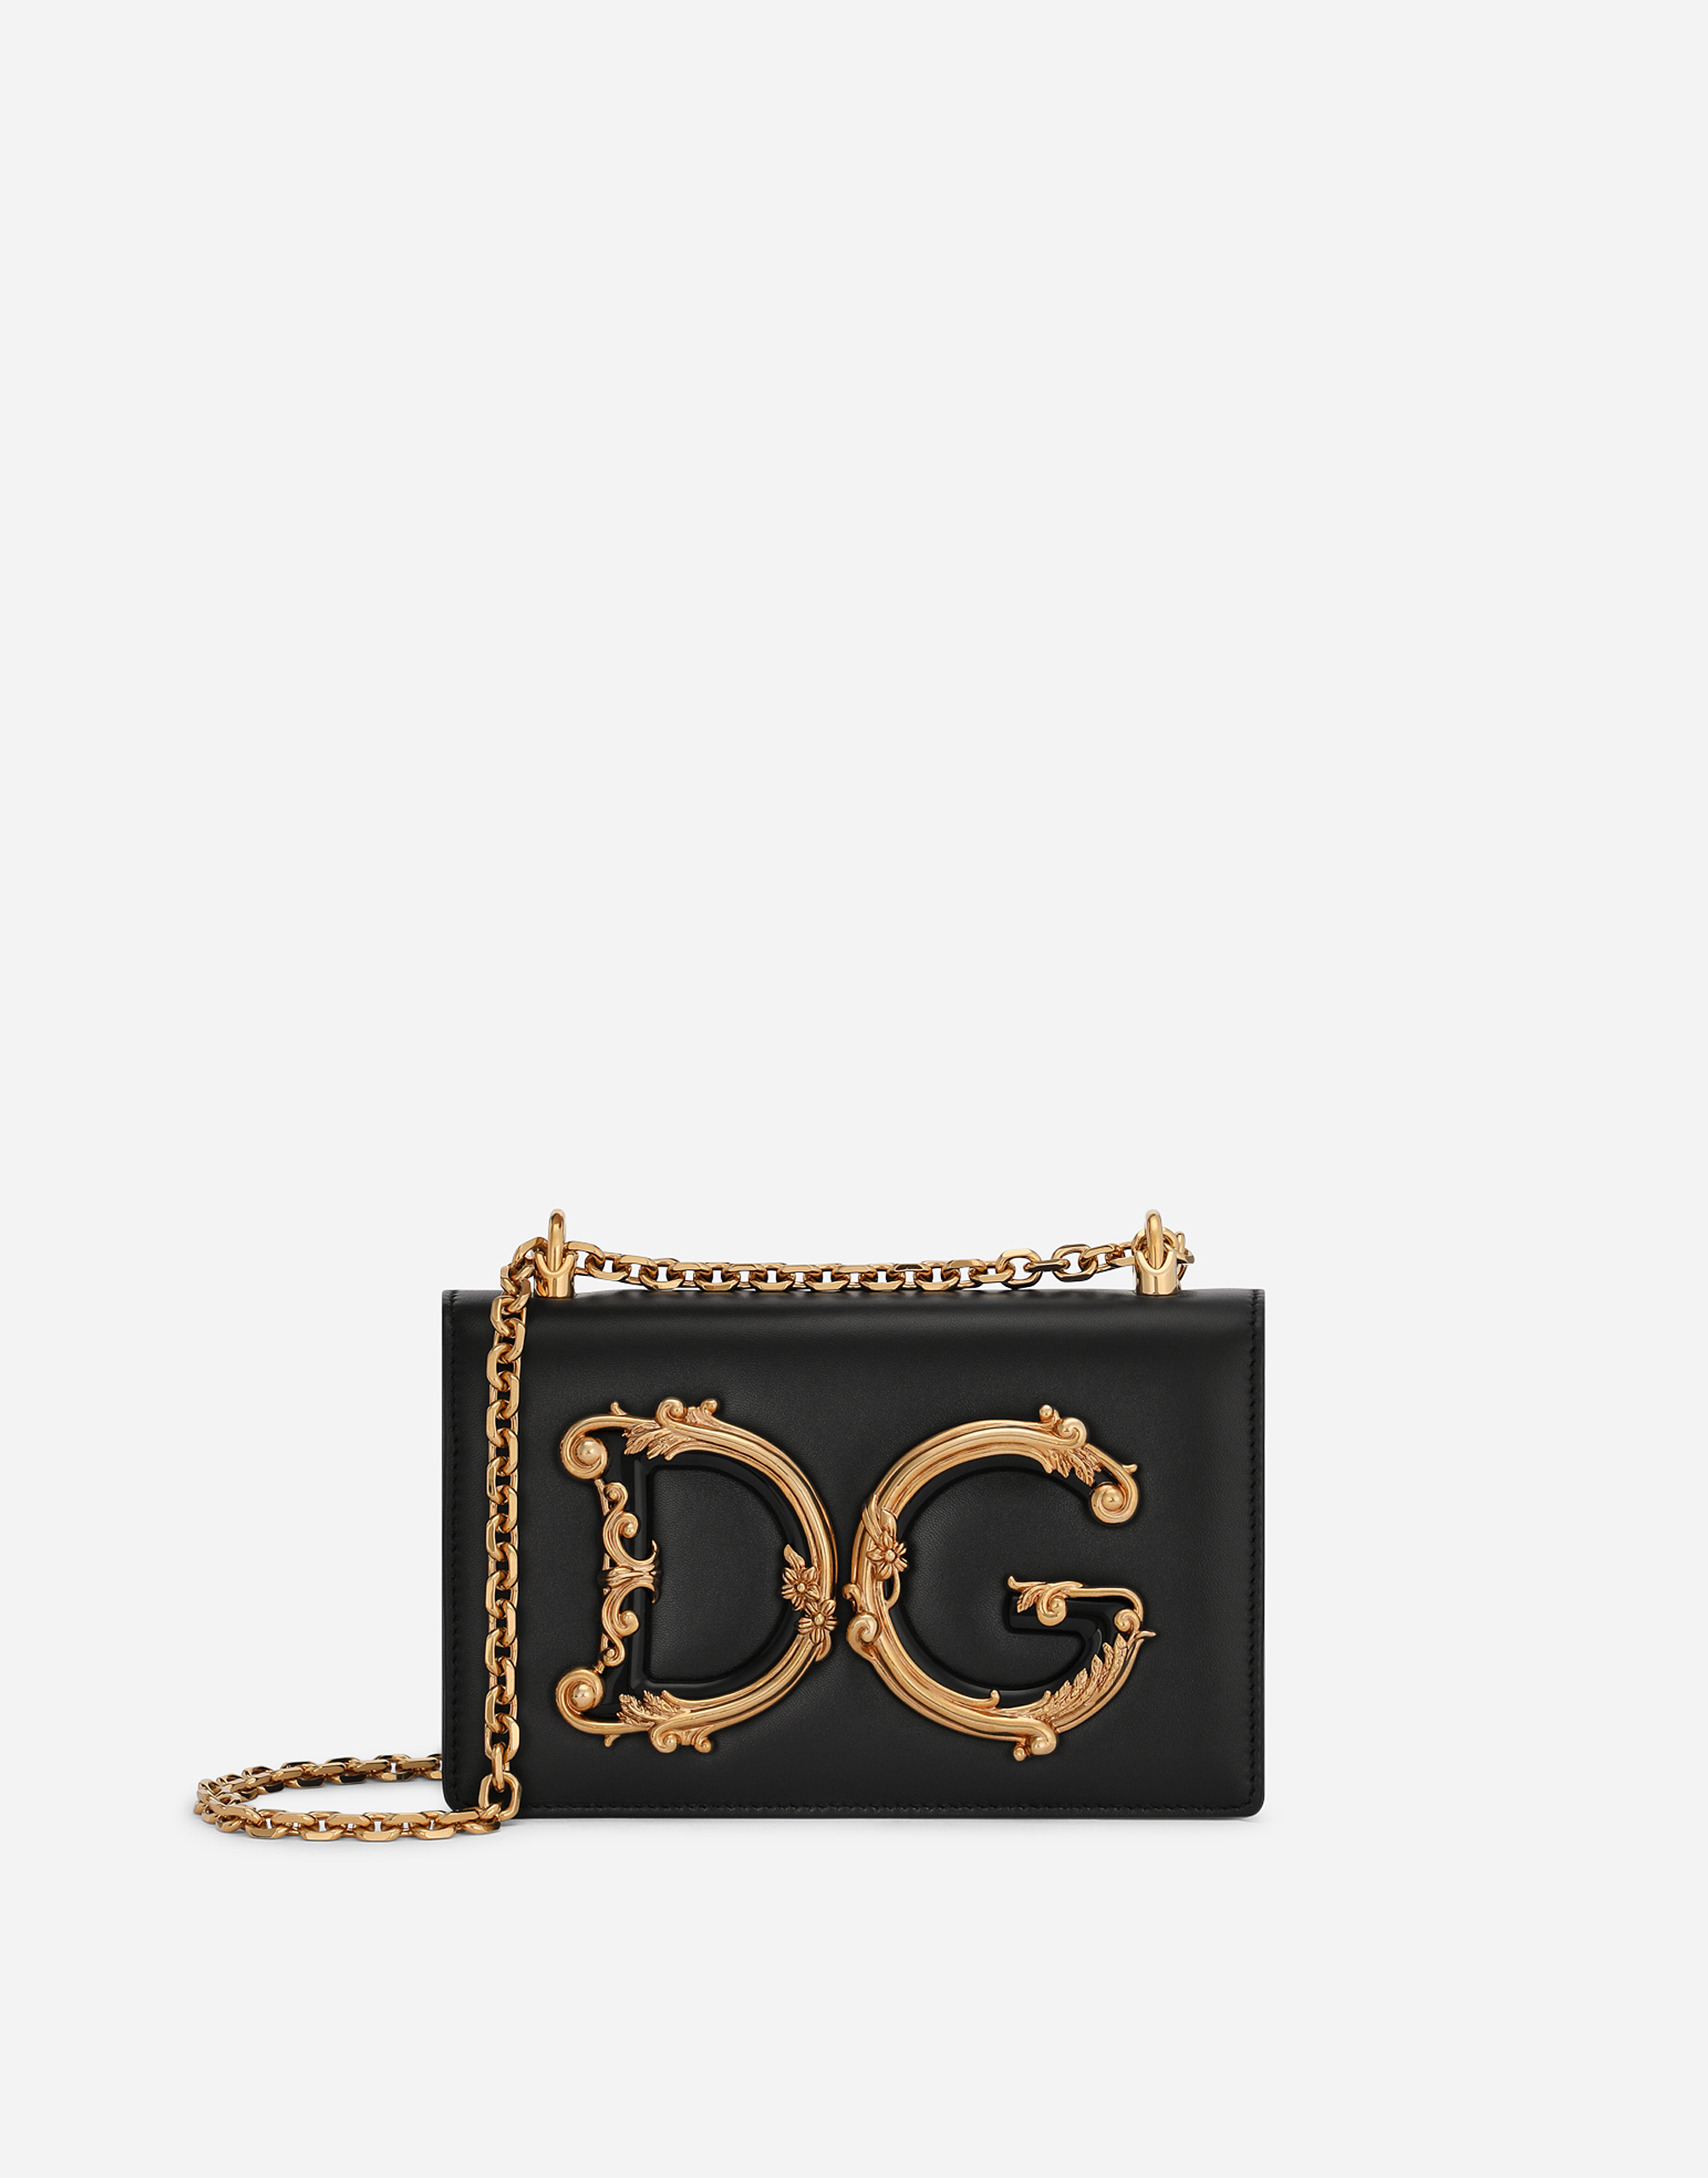 Nappa leather DG Girls shoulder bag